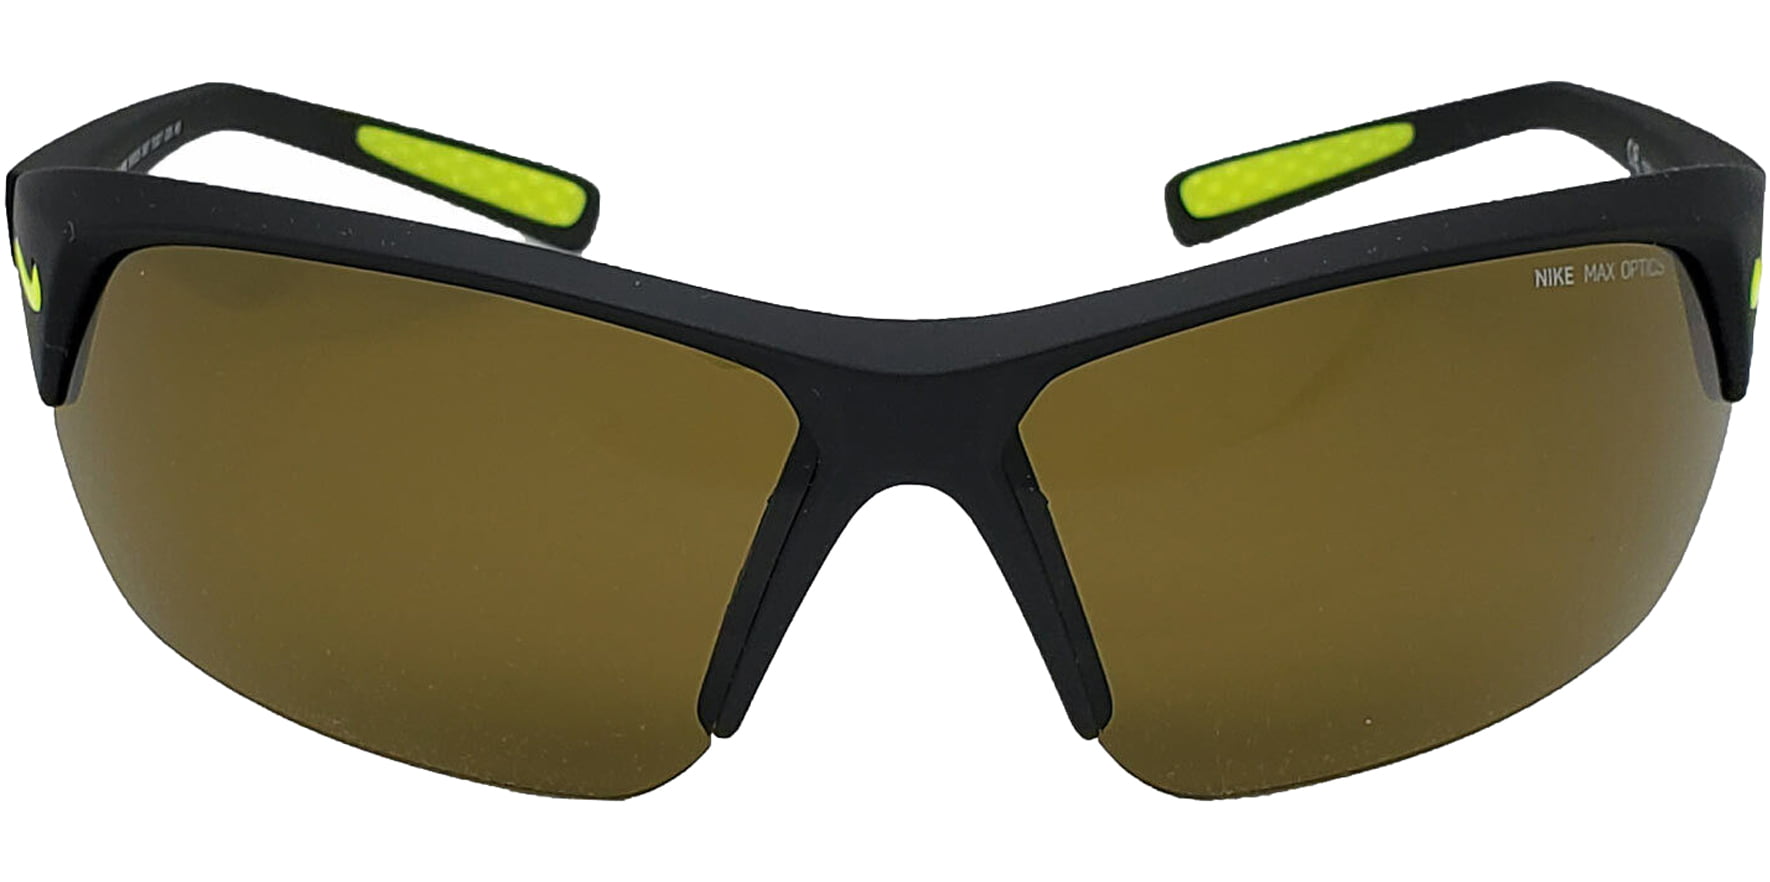 Nike Skylon Ace Matte Black Max Optics Sports Wrap Sunglasses - EV0525 007  Italy